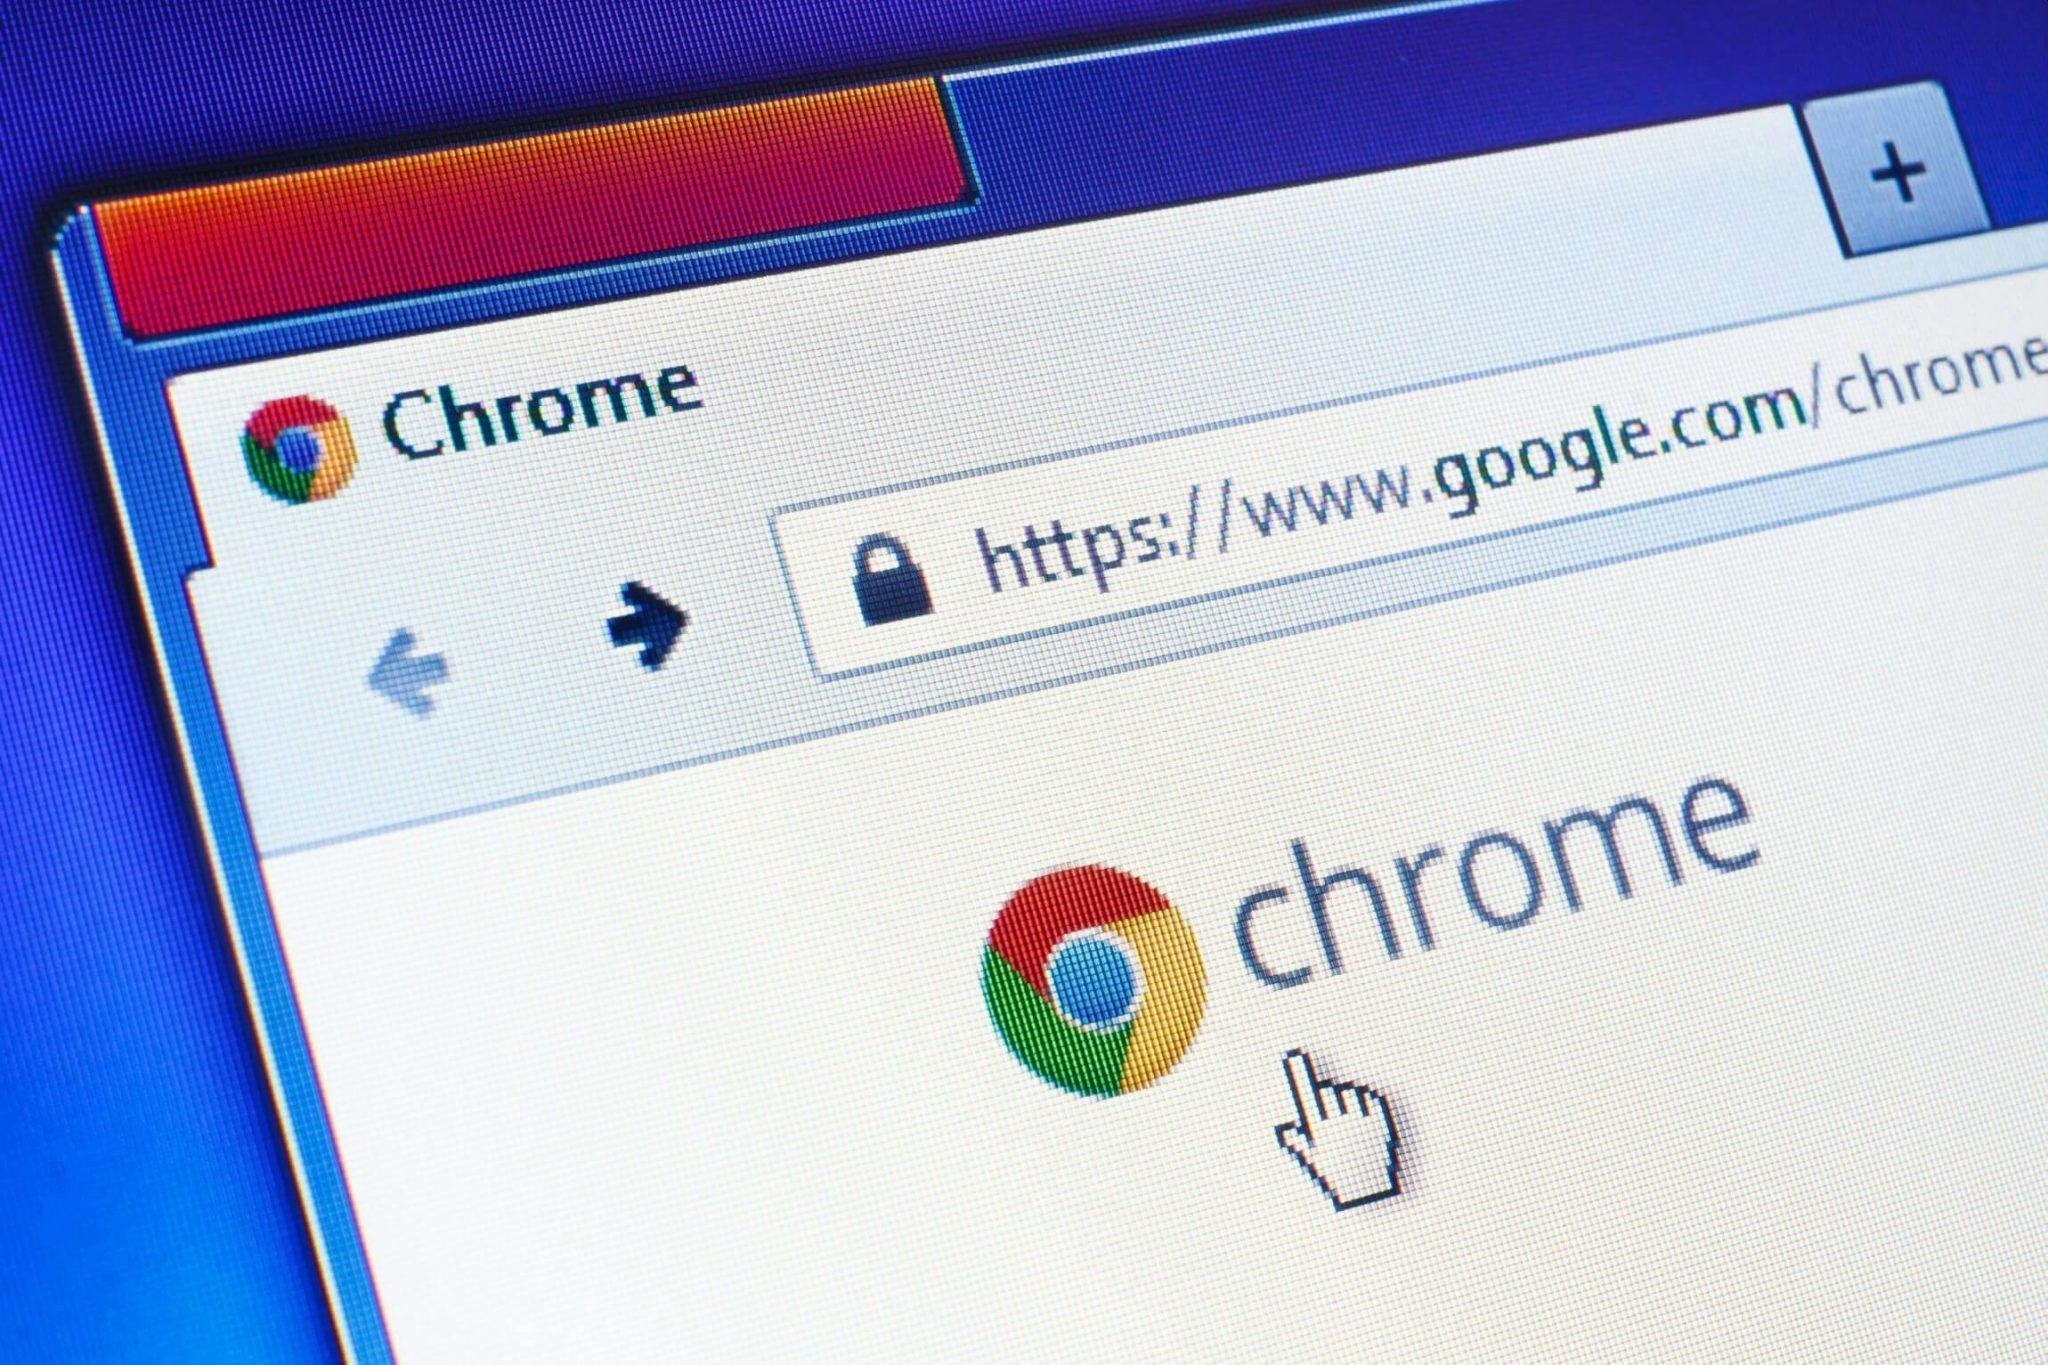 Chrome tarayıcısında sekmeler çift tıklamayla kapatılabilecek